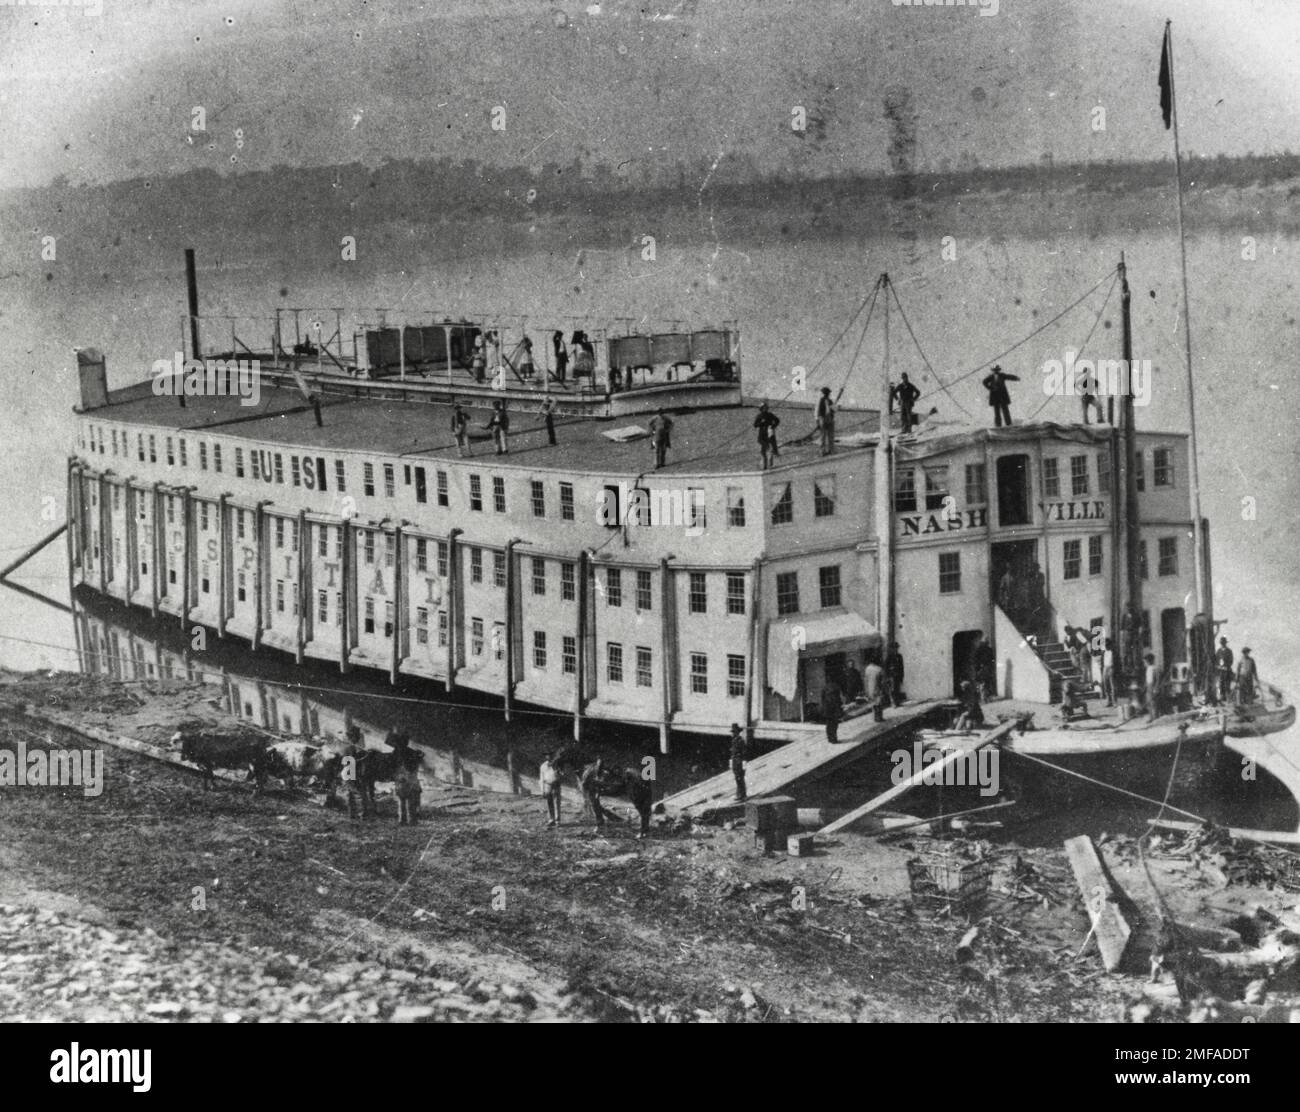 Nave ospedaliera, Nashville durante la guerra civile americana Foto Stock